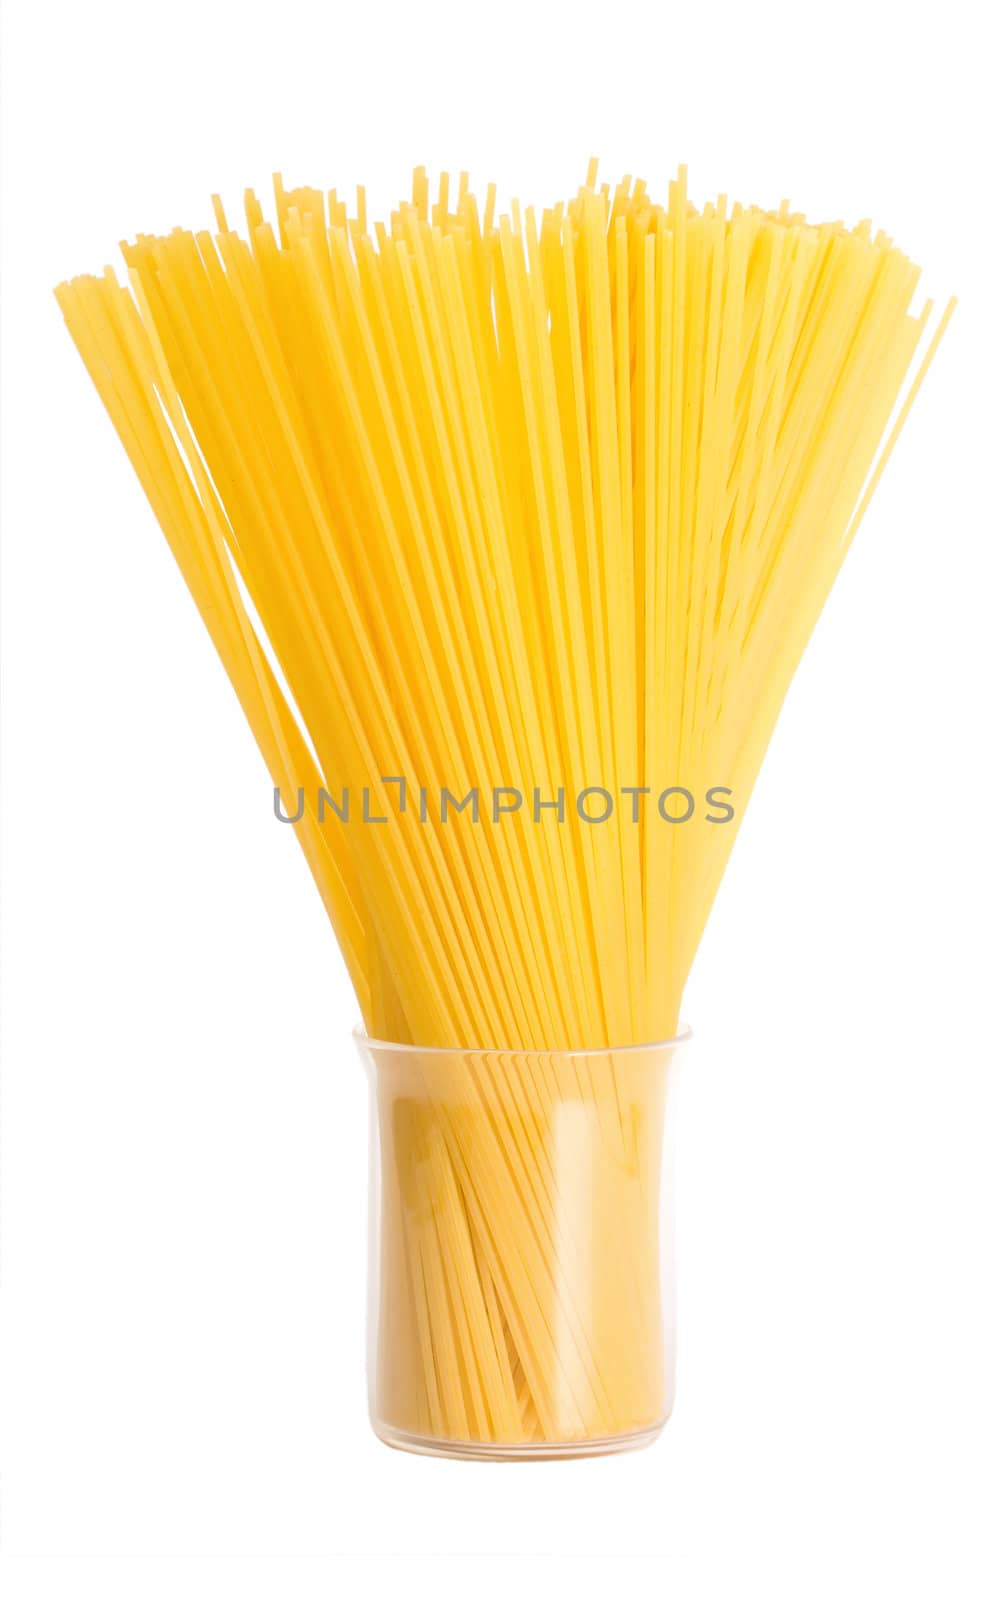 italian pasta isolated on white background.